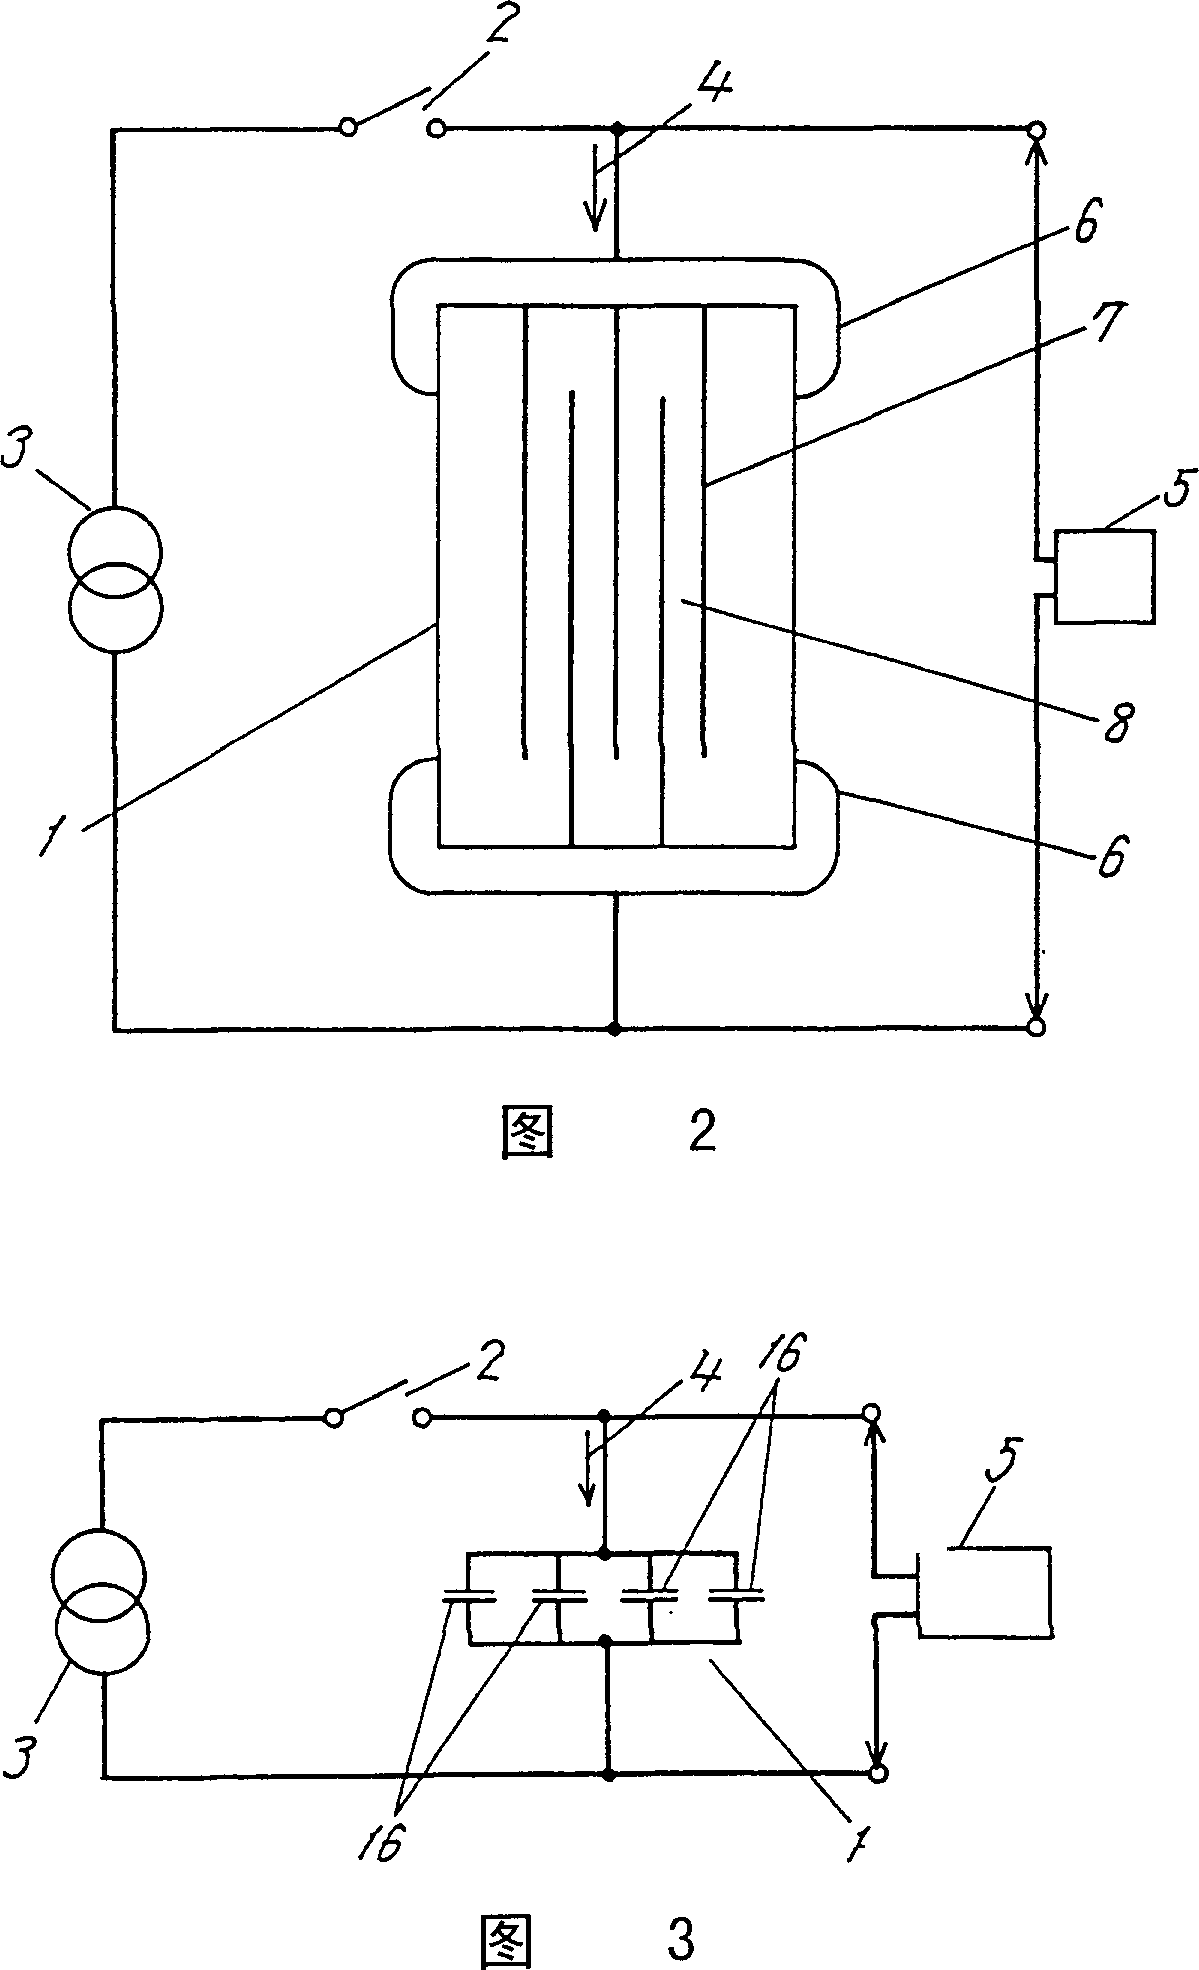 Method of screening laminated ceramic capacitor